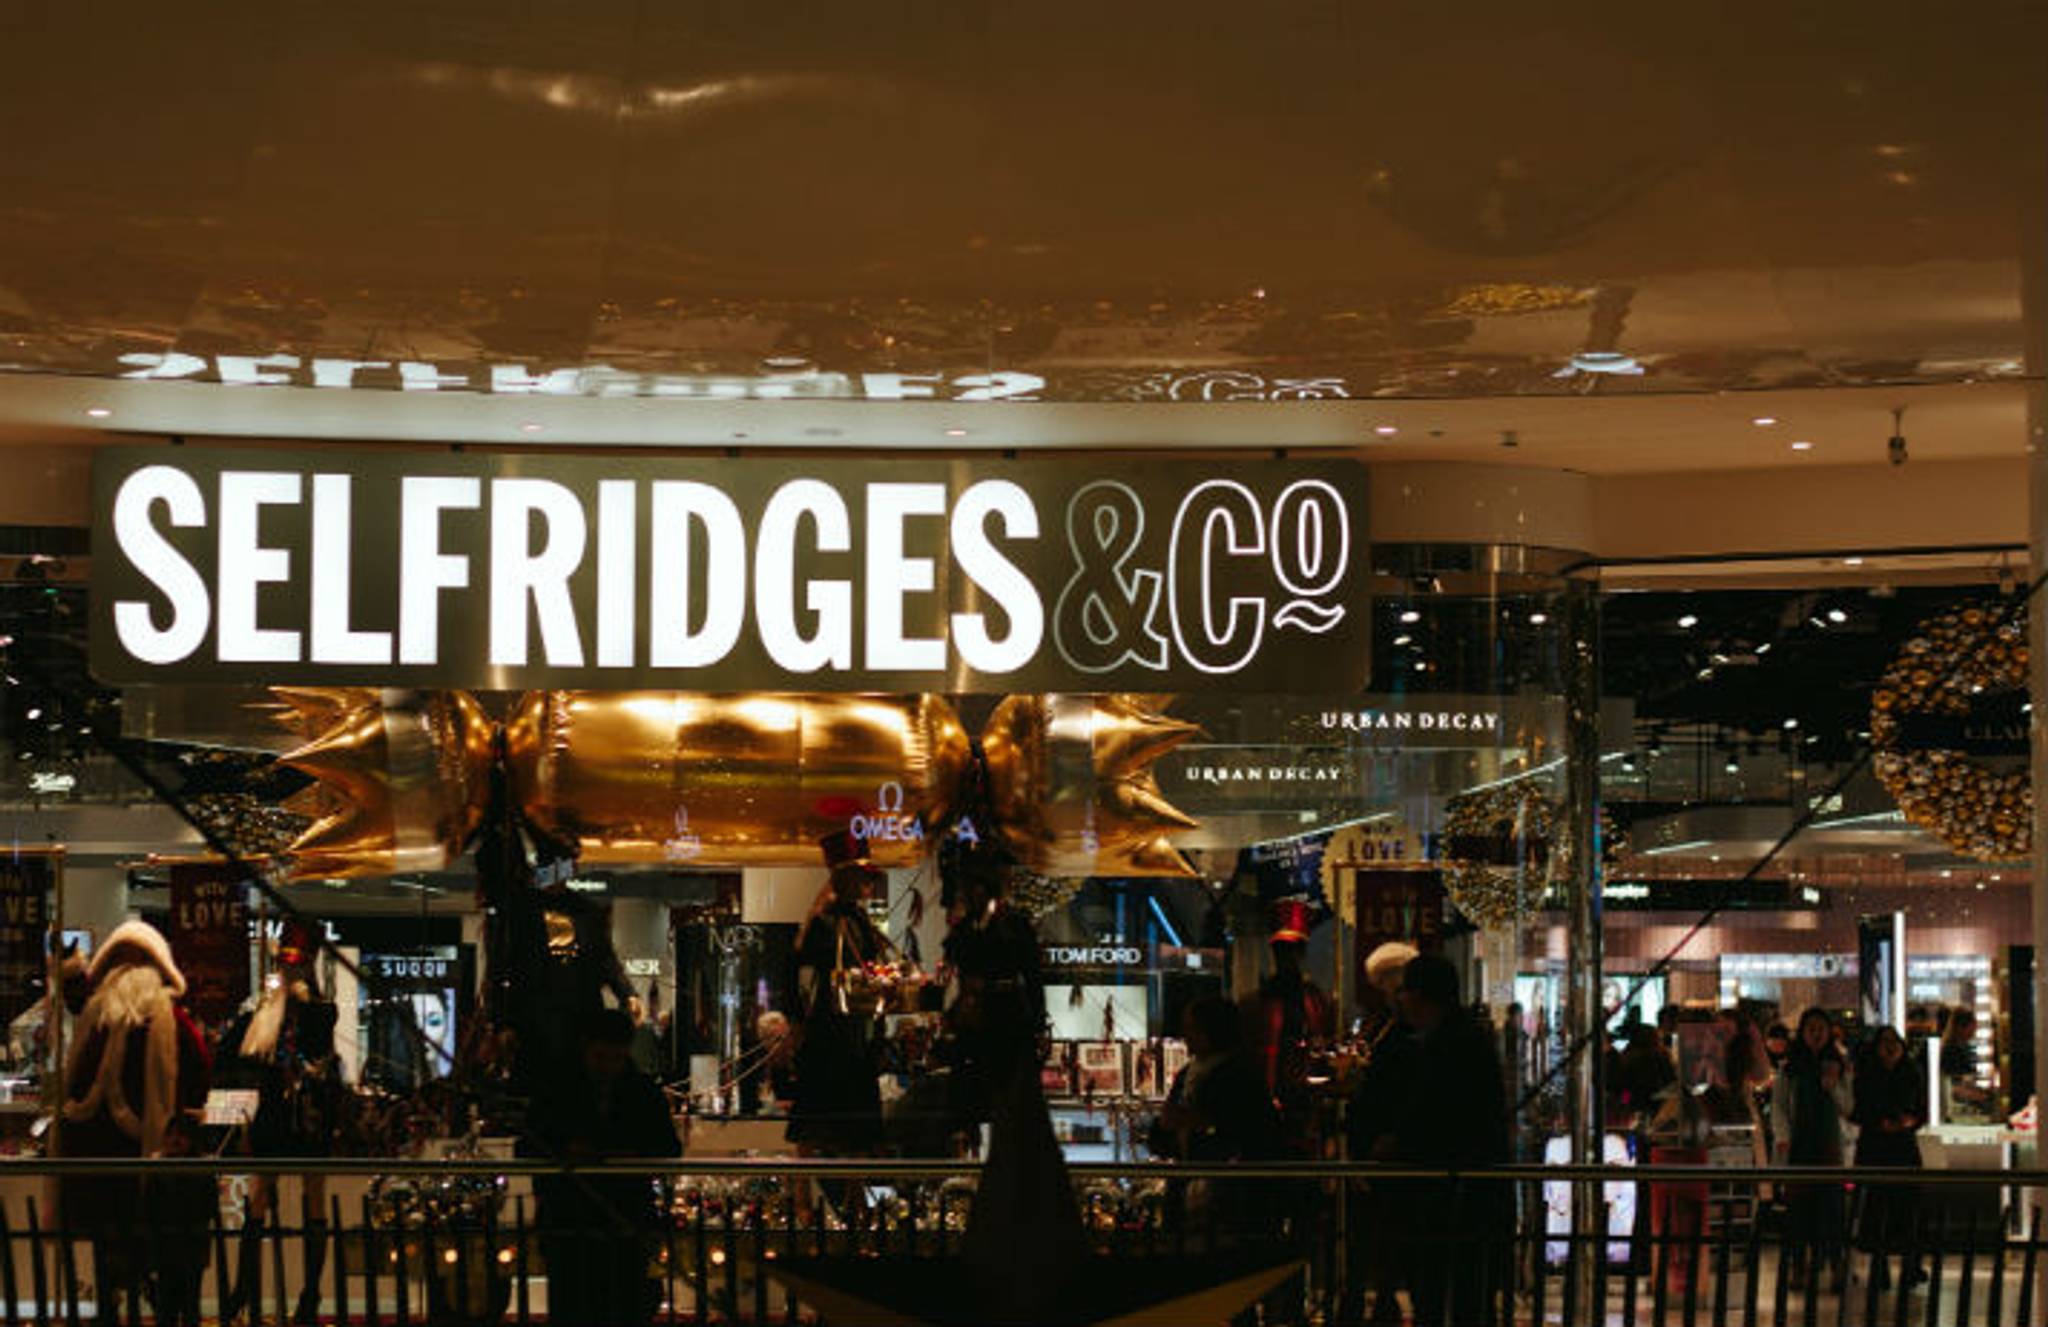 Selfridges' boutique cinema ups retail experience